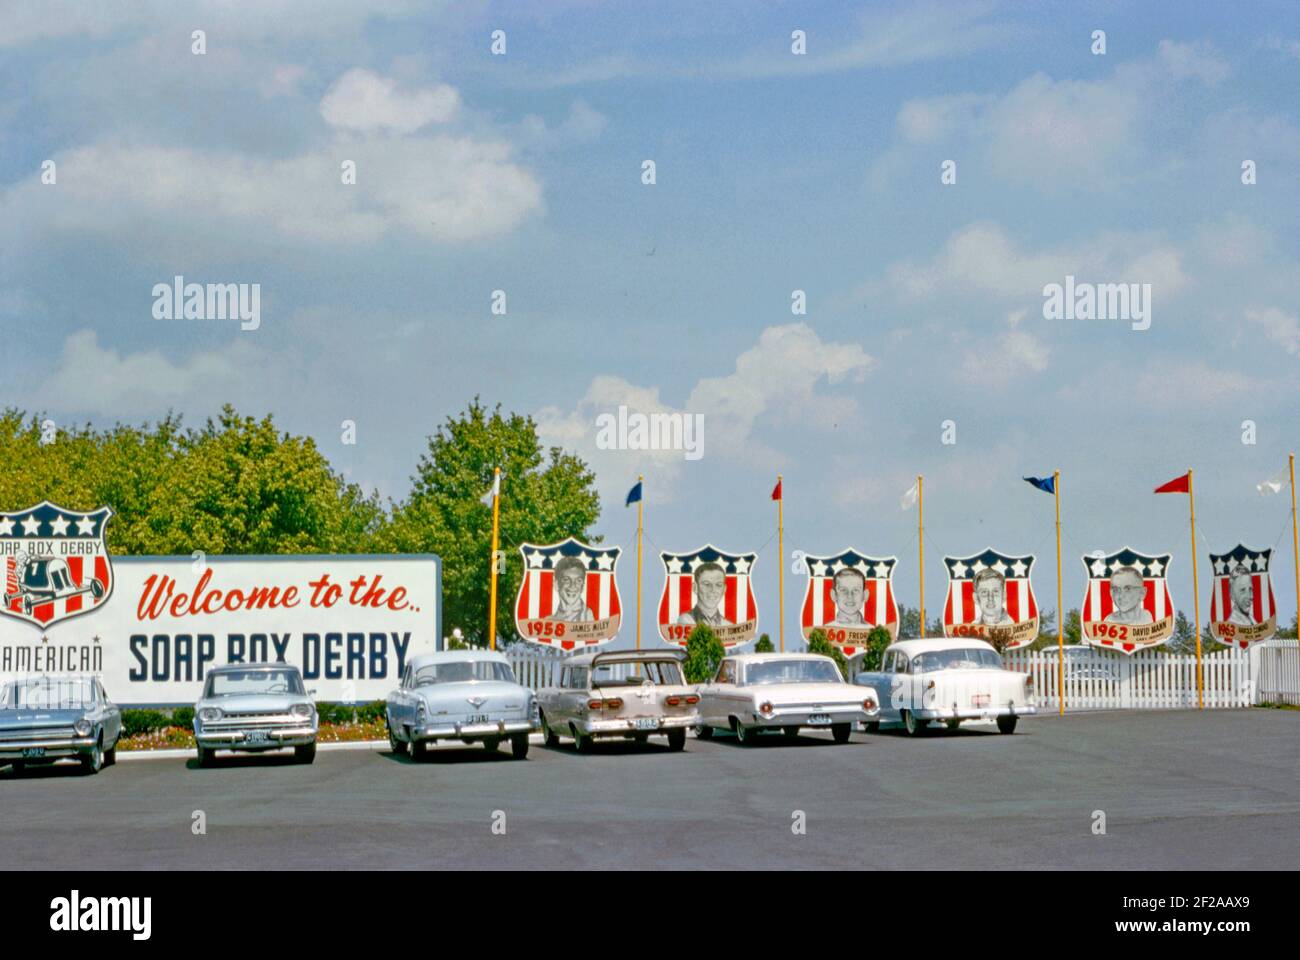 Il parcheggio presso Derby Downs, Akron, Ohio, USA nel 1964. Il locale è stato il circuito di casa del ‘All American SOAP Box Derby’ da quando è stato costruito come progetto di Works Progress Administration (WPA) negli anni trenta. Le tradizioni abbondano con un cartello di benvenuto e famosi vincitori precedenti di gare mostrate su striscioni, tra cui James Miley (1958) e David Mann (1962). La pista asfaltata a tre corsie inizia vicino alla cima del George Washington Boulevard e scende in linea retta lungo la collina boscosa. Questa immagine è tratta da un vecchio lucido a colori americano amatoriale Kodak – una fotografia d'epoca degli anni '60. Foto Stock